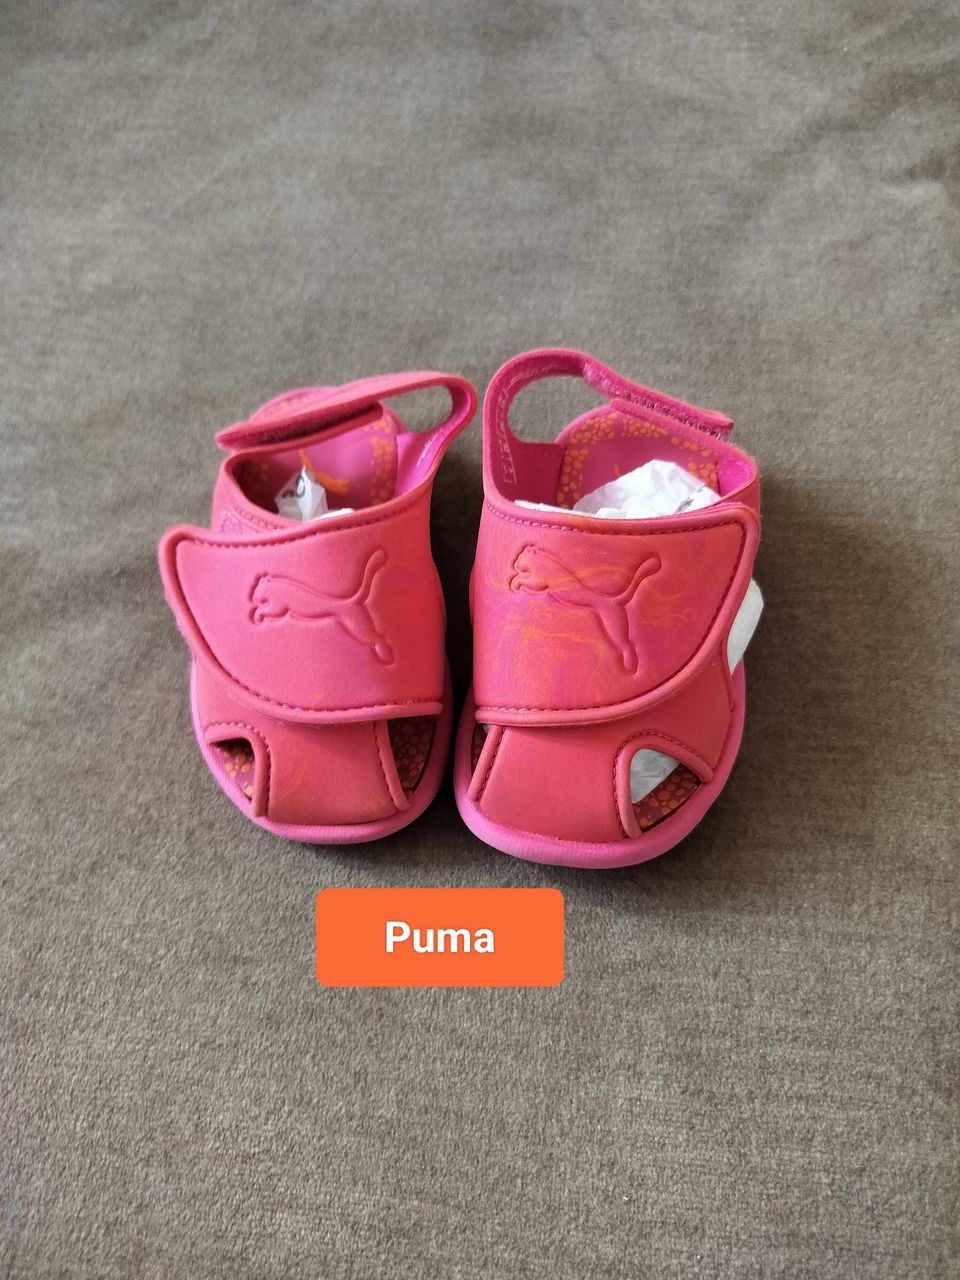 Puma lasten kengät/sandaalit, koko 20